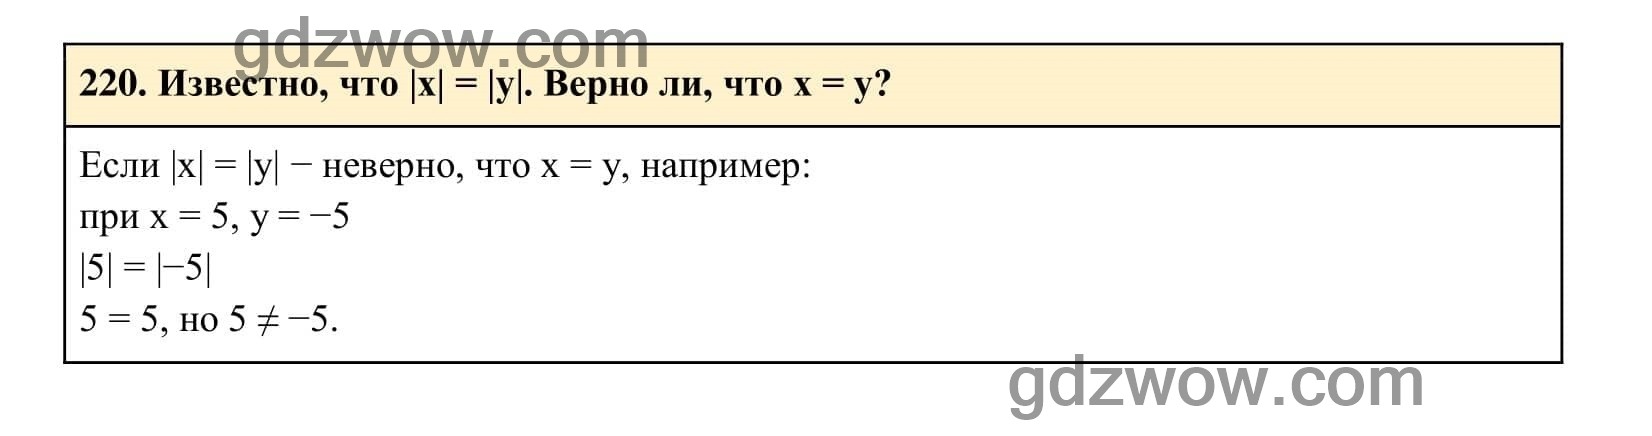 Упражнение 220 - ГДЗ по Алгебре 7 класс Учебник Макарычев (решебник) - GDZwow